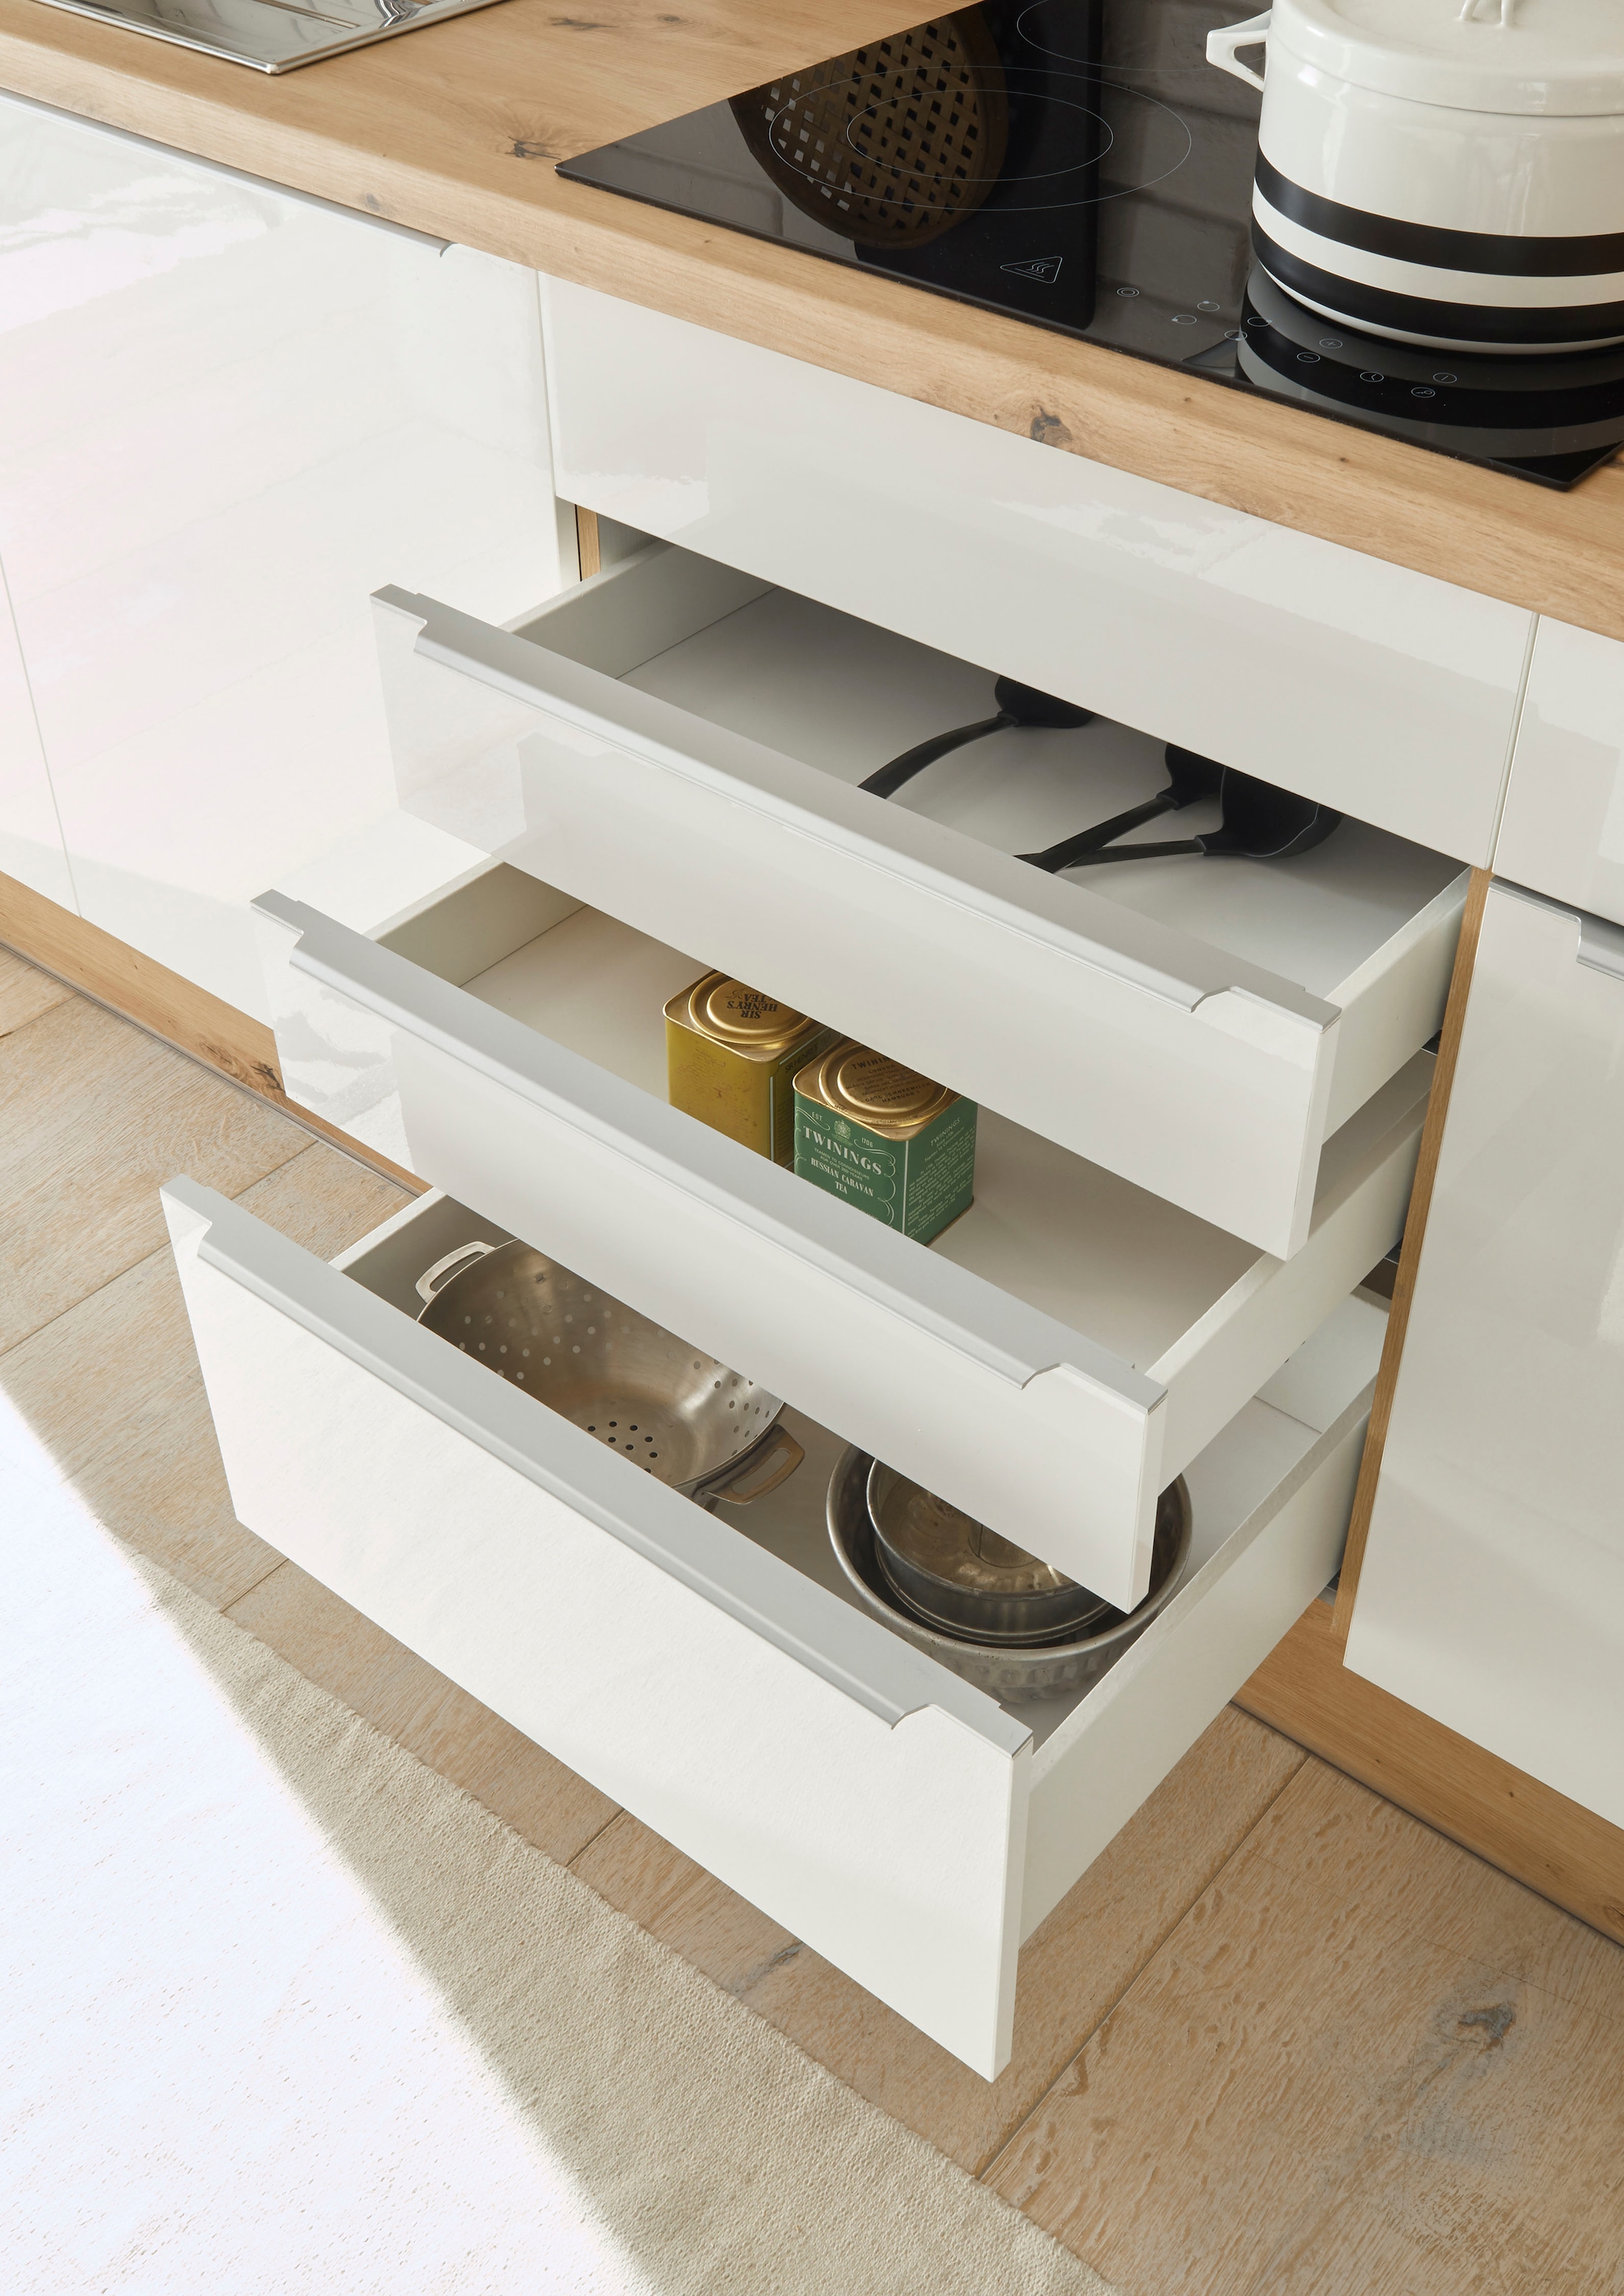 RESPEKTA Küchenzeile »Safado aus der Serie Marleen«, Breite 280 cm, hochwertige  Ausstattung wie Soft Close Funktion | BAUR